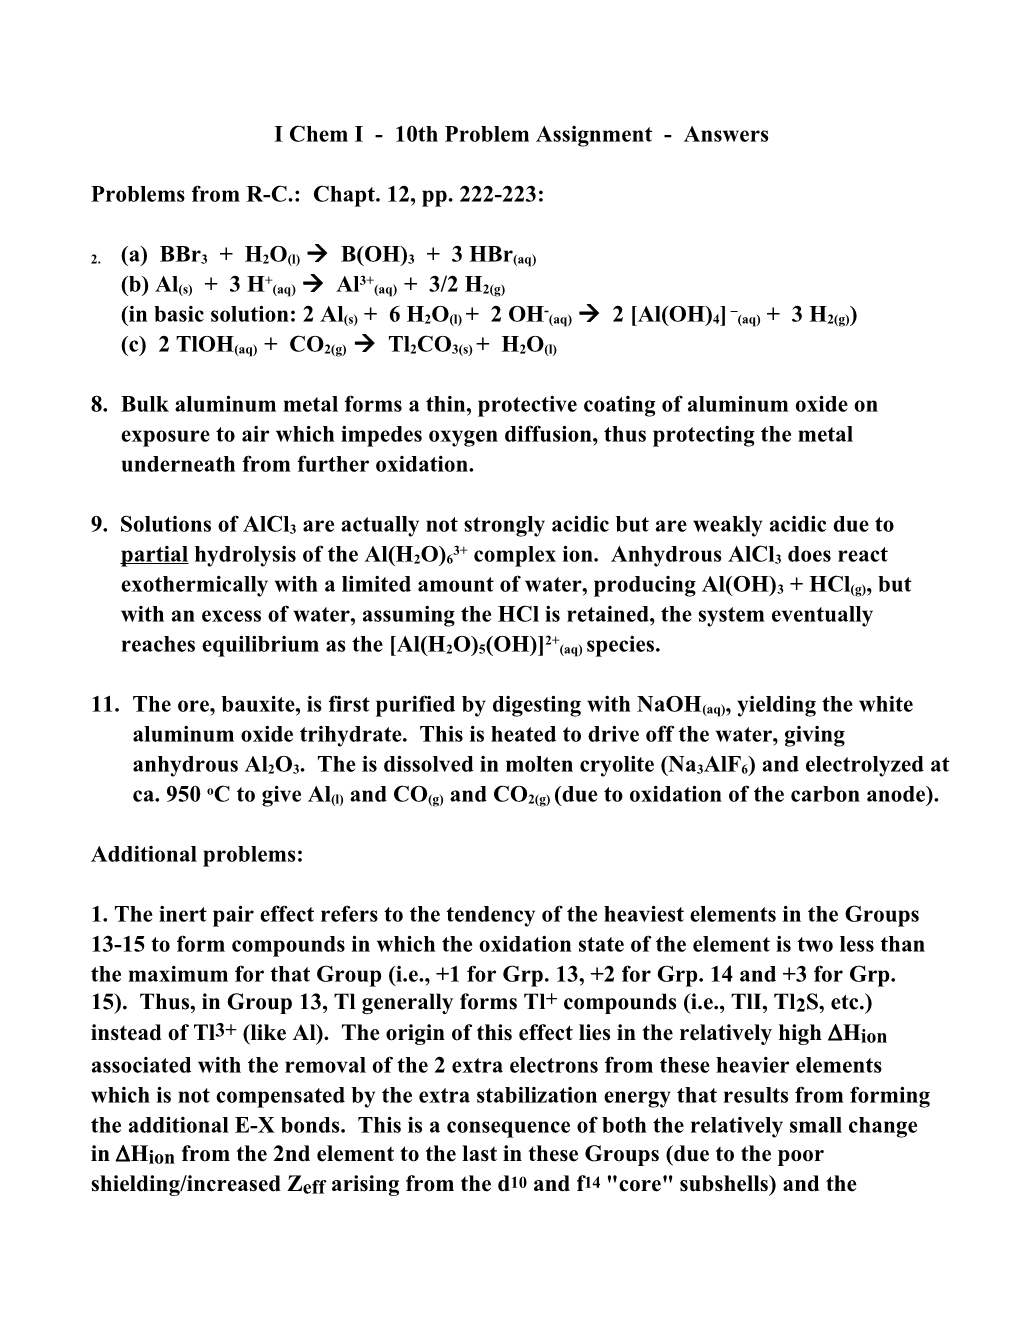 I Chem I - 5Th Problem Assignment - Due April 10, 1998